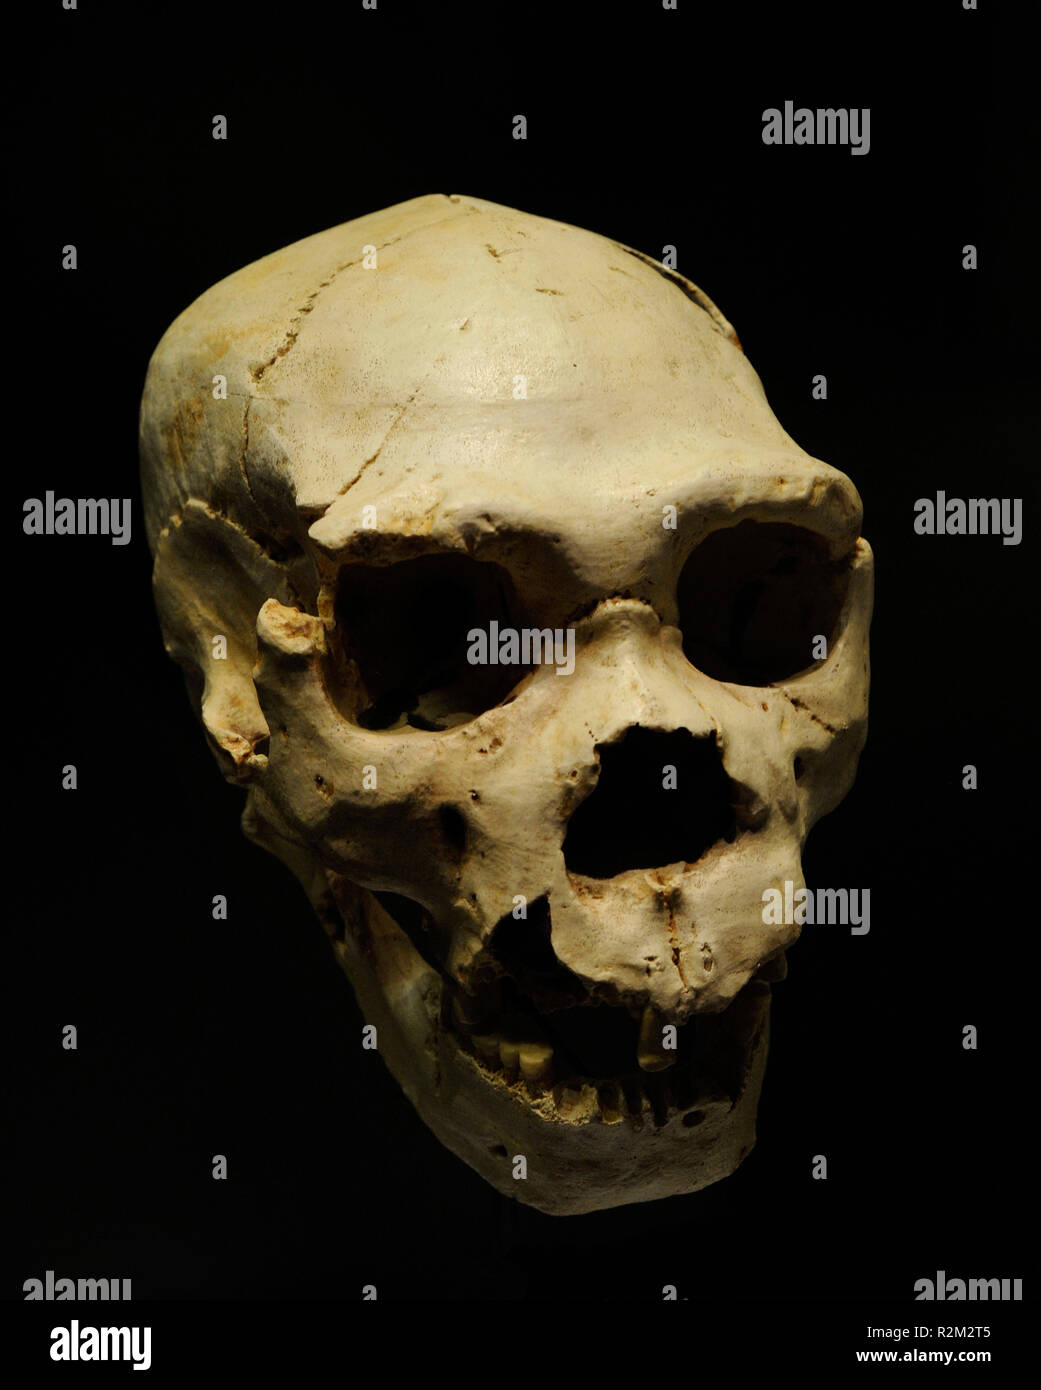 Homo heidelbergensis. 5 Schädel und Unterkiefer AN-888 von einer erwachsenen Person, Miguelon genannt. In der Sima de los Huesos, Atapuerca (Provinz Burgos, Kastilien und Leon) gefunden. Nationalen Archäologischen Museum. Madrid. Spanien. Stockfoto